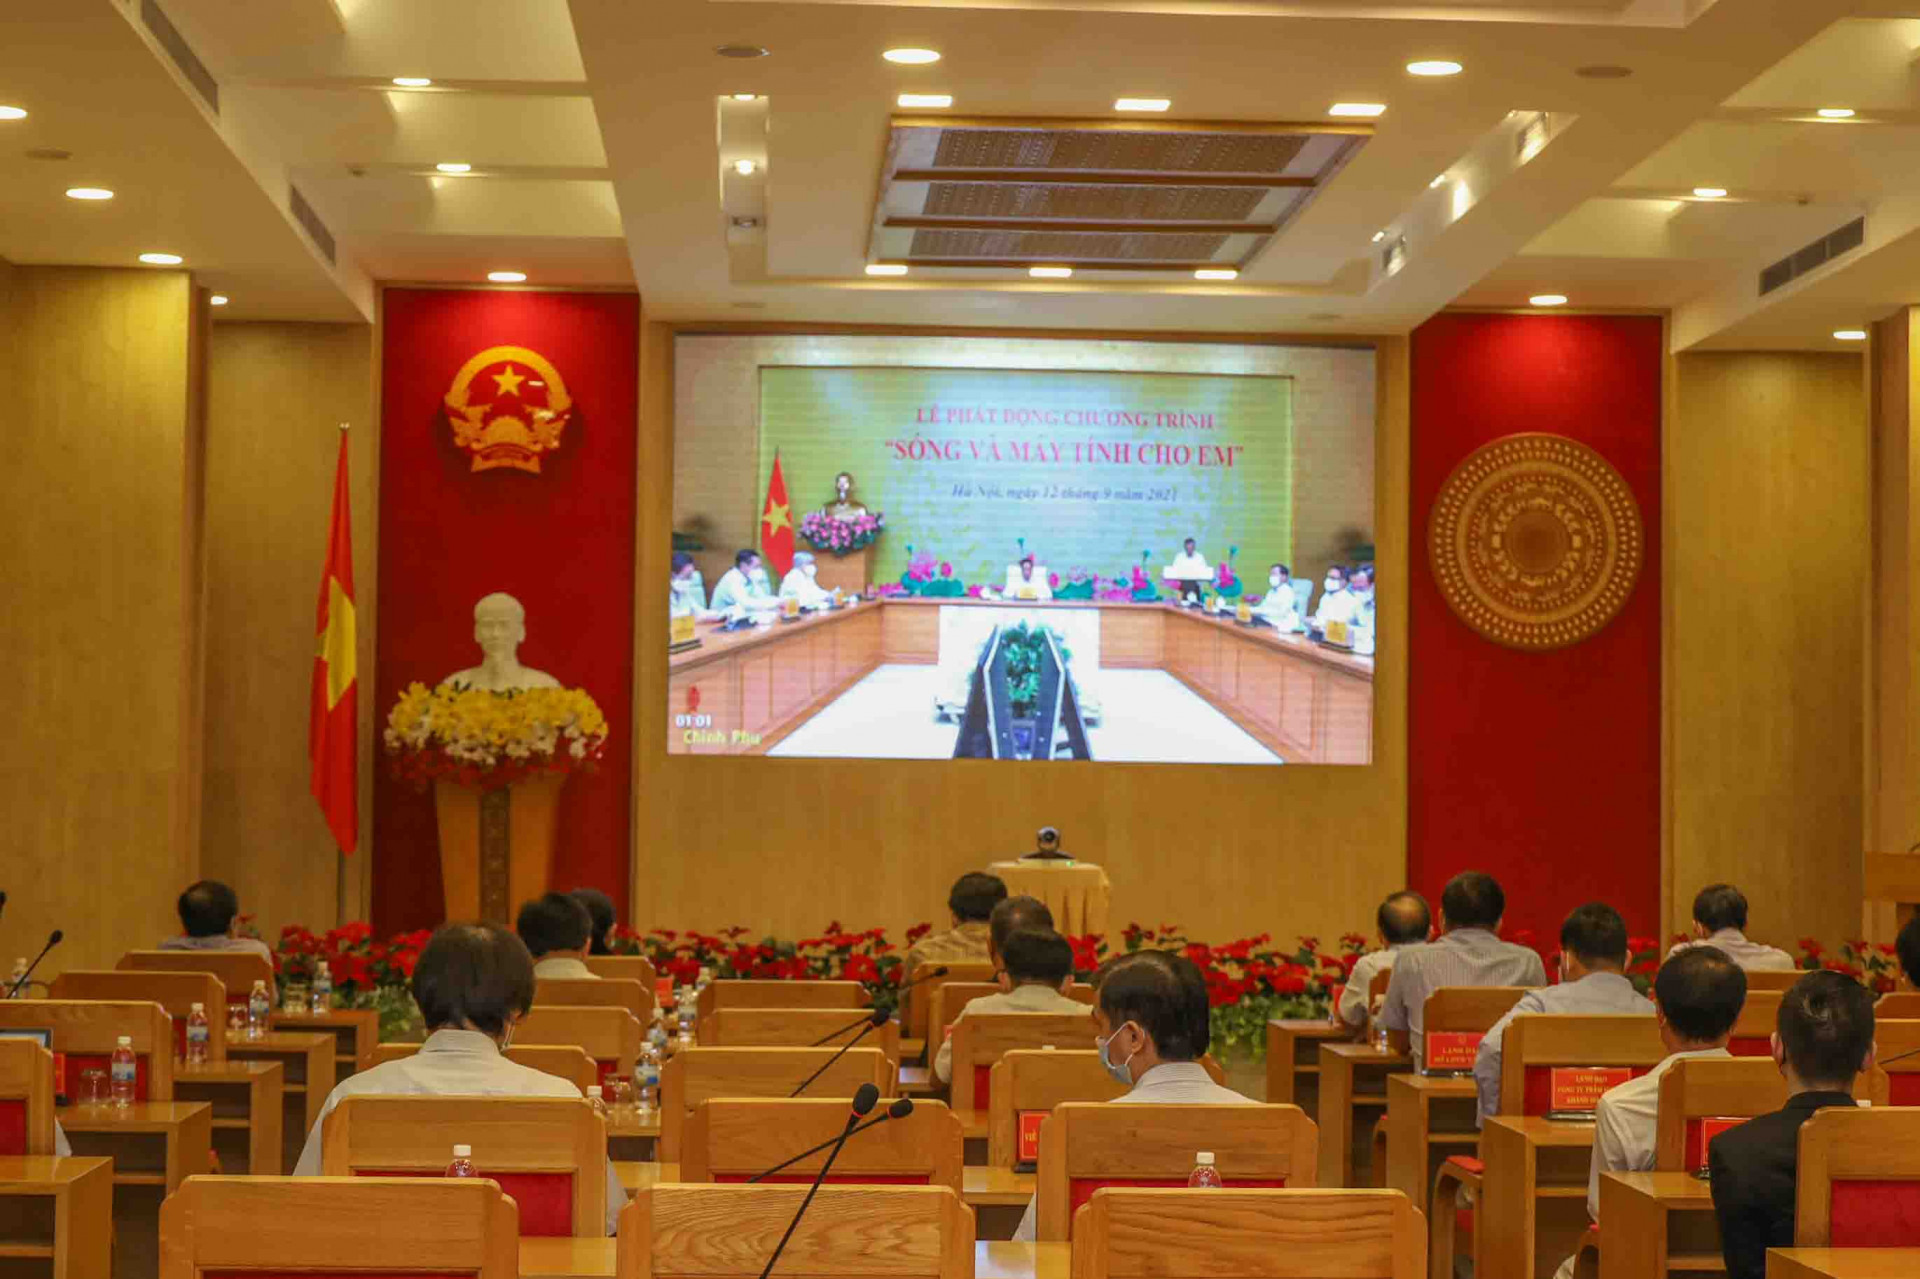 Hình ảnh buổi lễ phát động trực tuyến chương trình Sóng và Máy tính cho em nhìn từ điểm cầu tỉnh Khánh Hòa. 